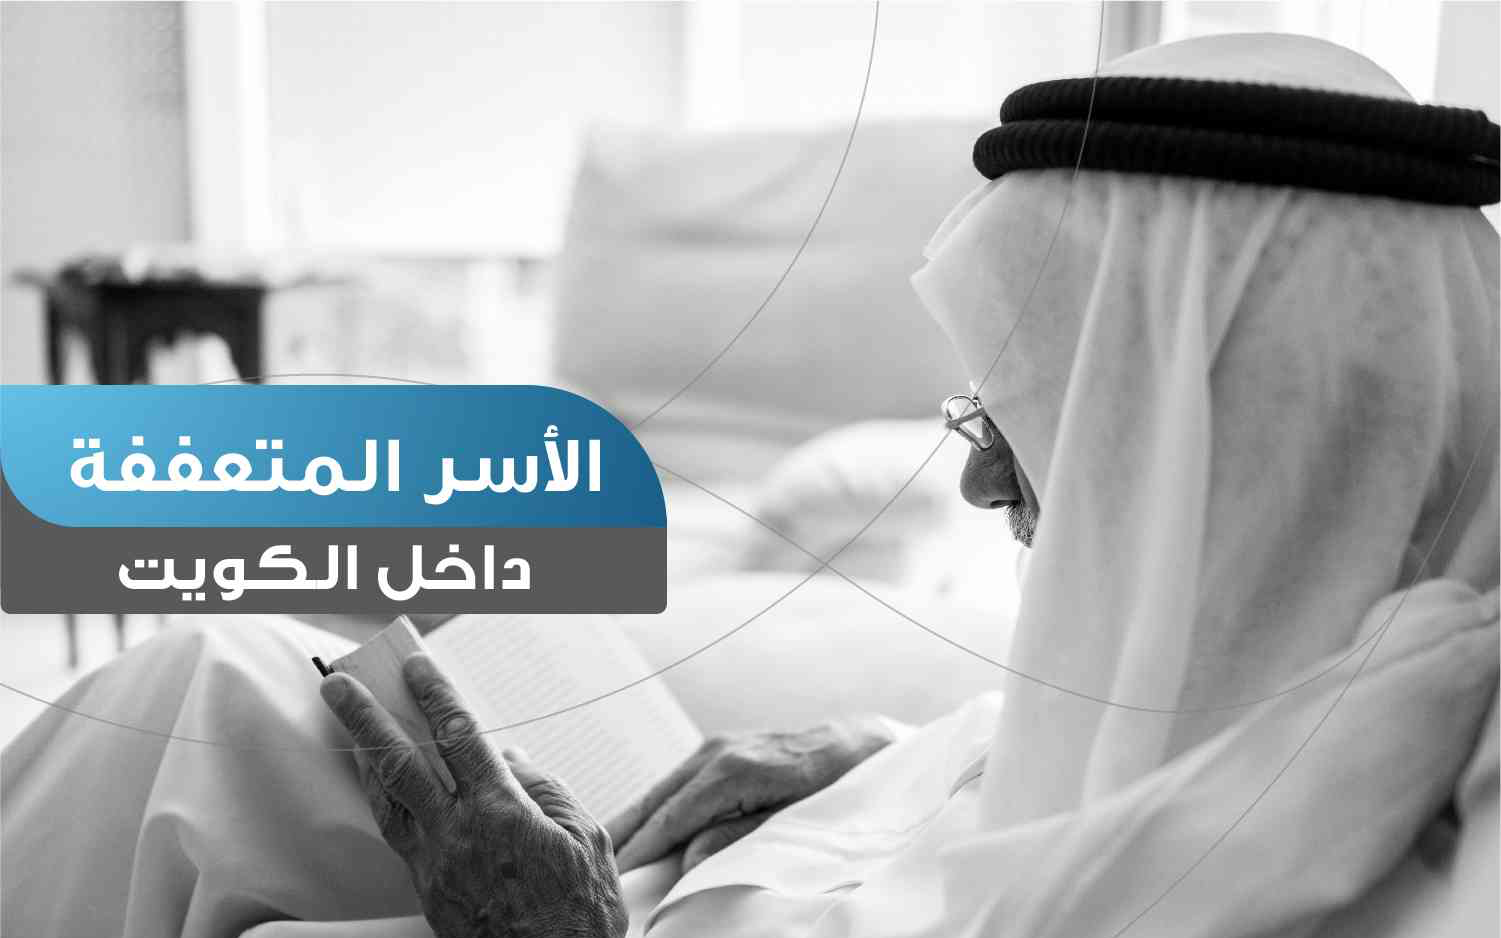 الأسر المتعففة داخل الكويت - photo